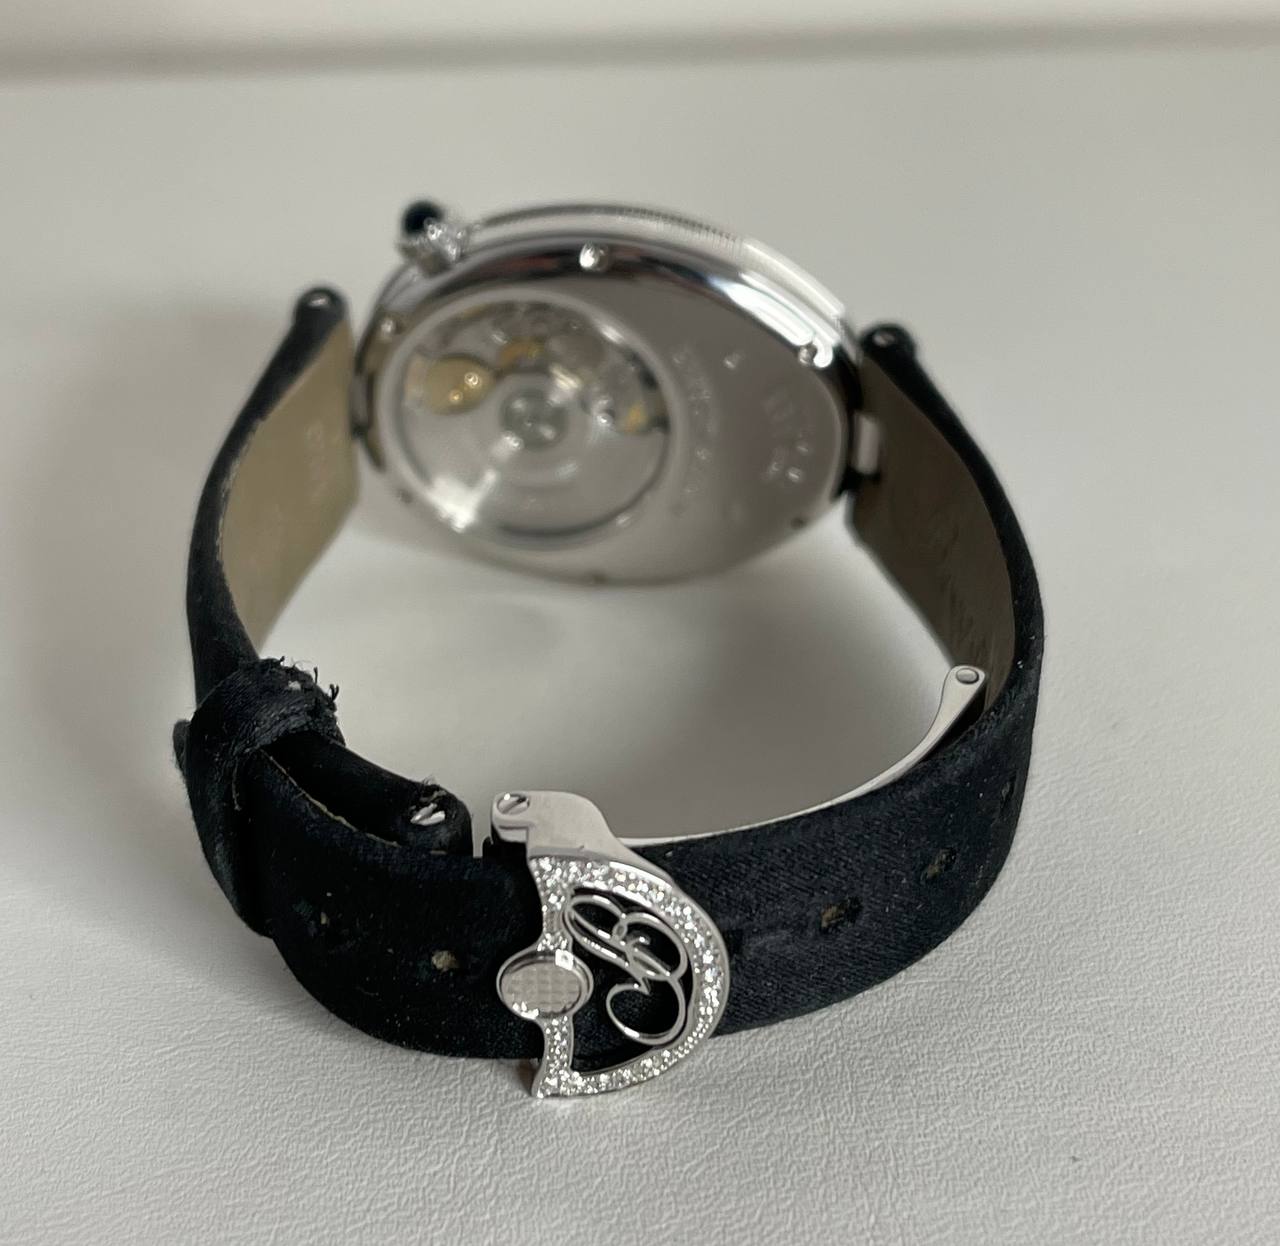 Часы Breguet Reine de Naples 8908BB/52/864